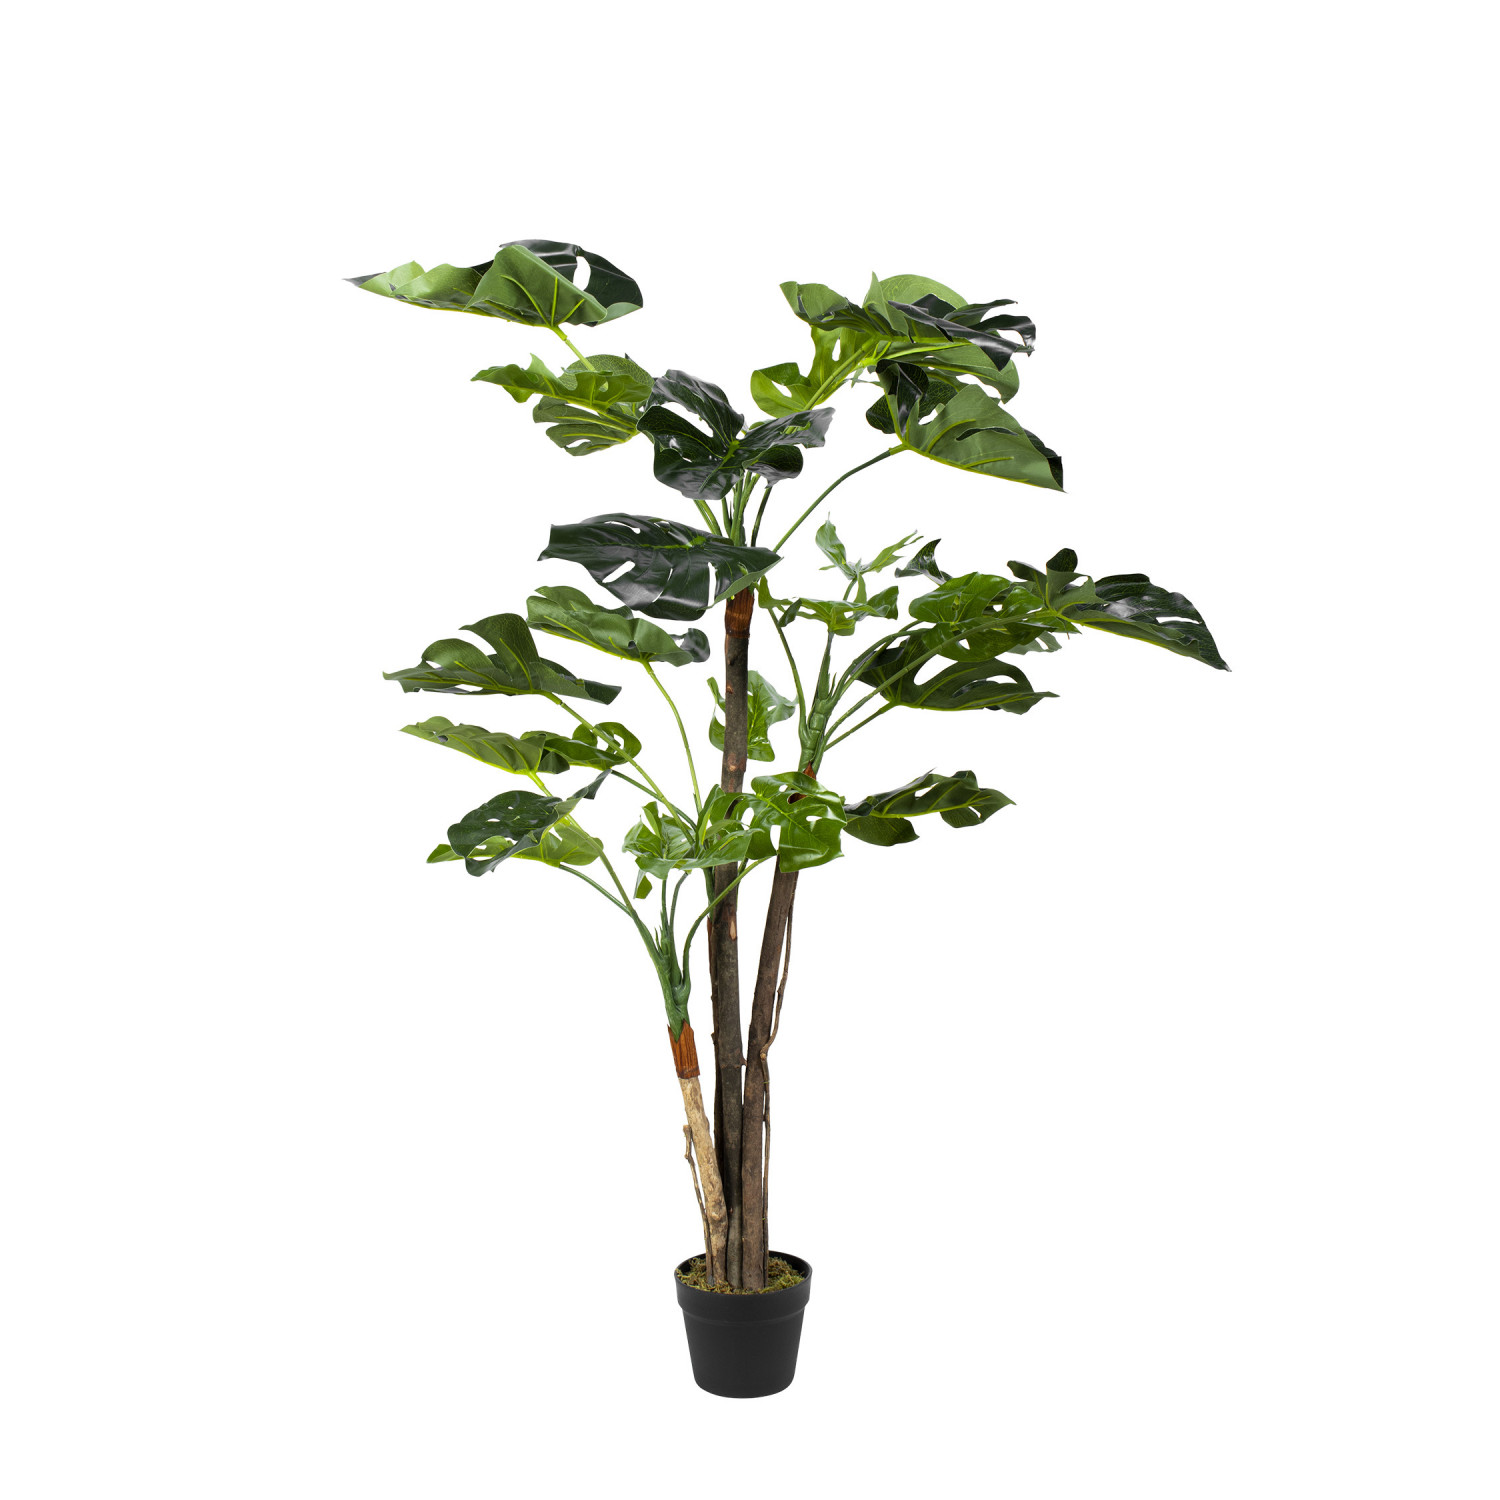 Plante artificielle avec pot Monstera Vert 100 cm